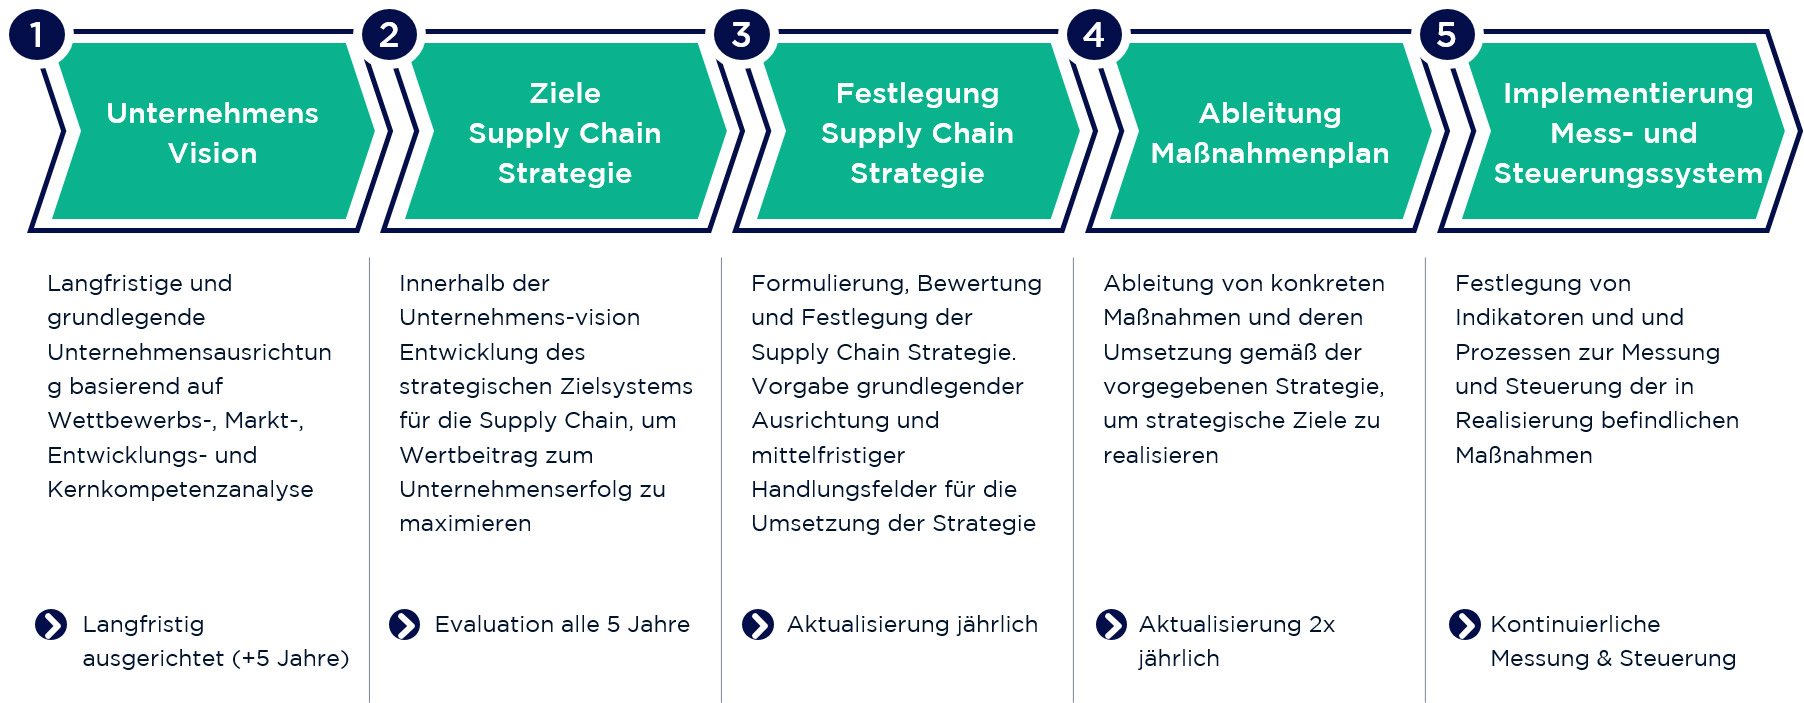 Abbildung 1: Supply Chain Strategie in 5 Schritten